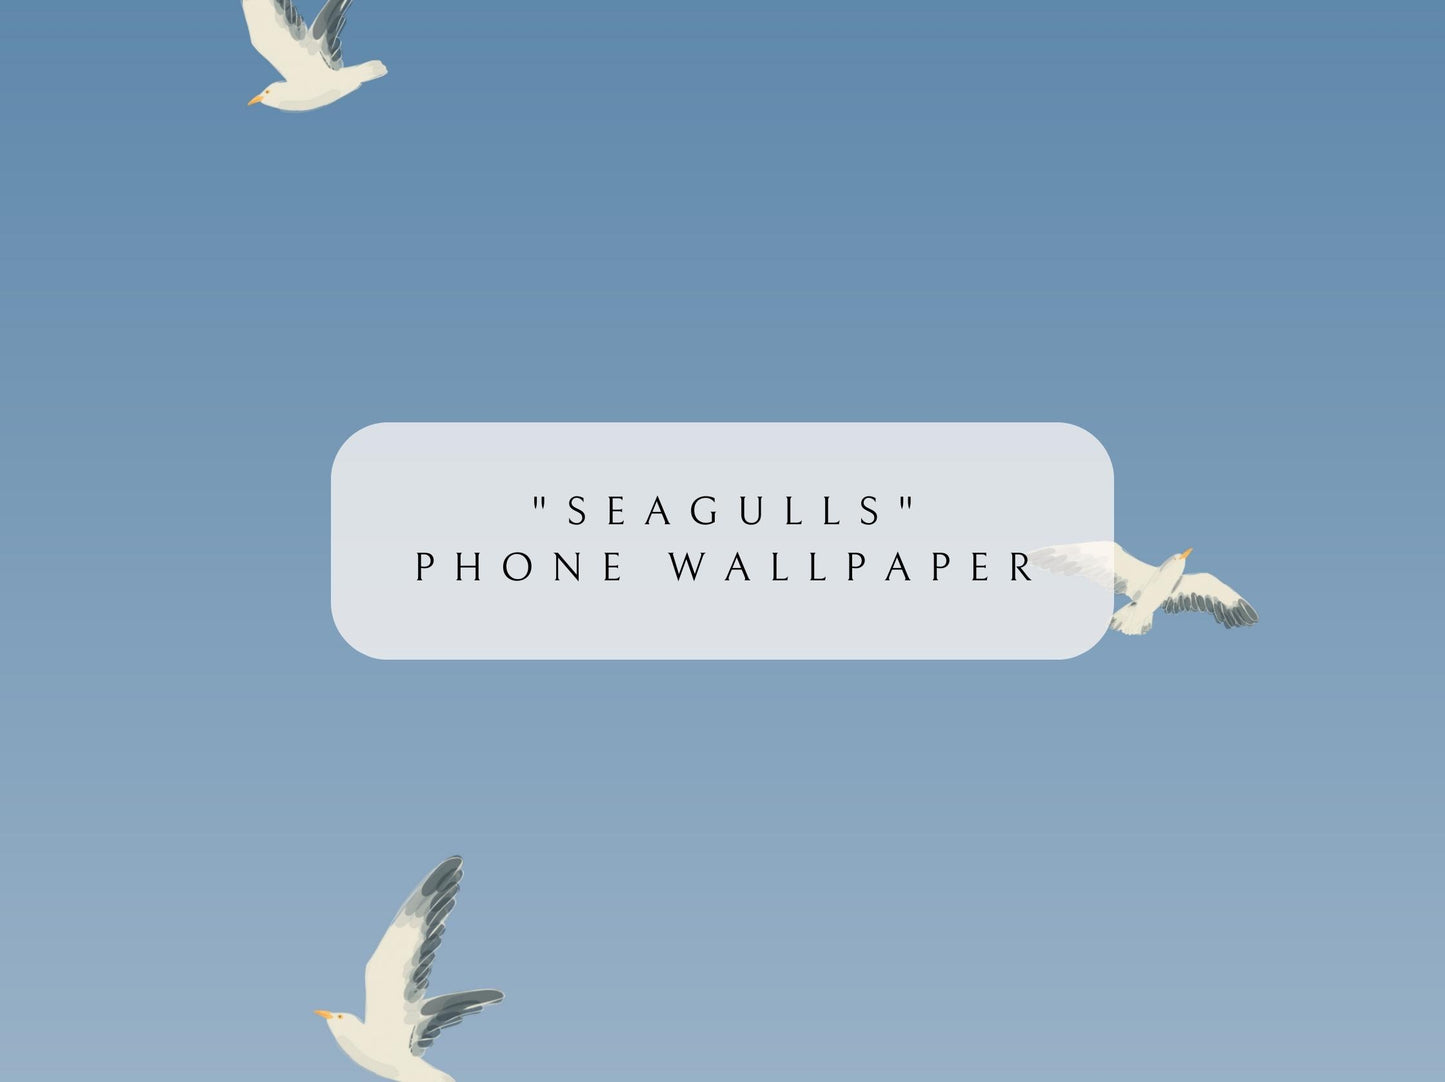 Phone Wallpaper Digital Download | "Seagulls"